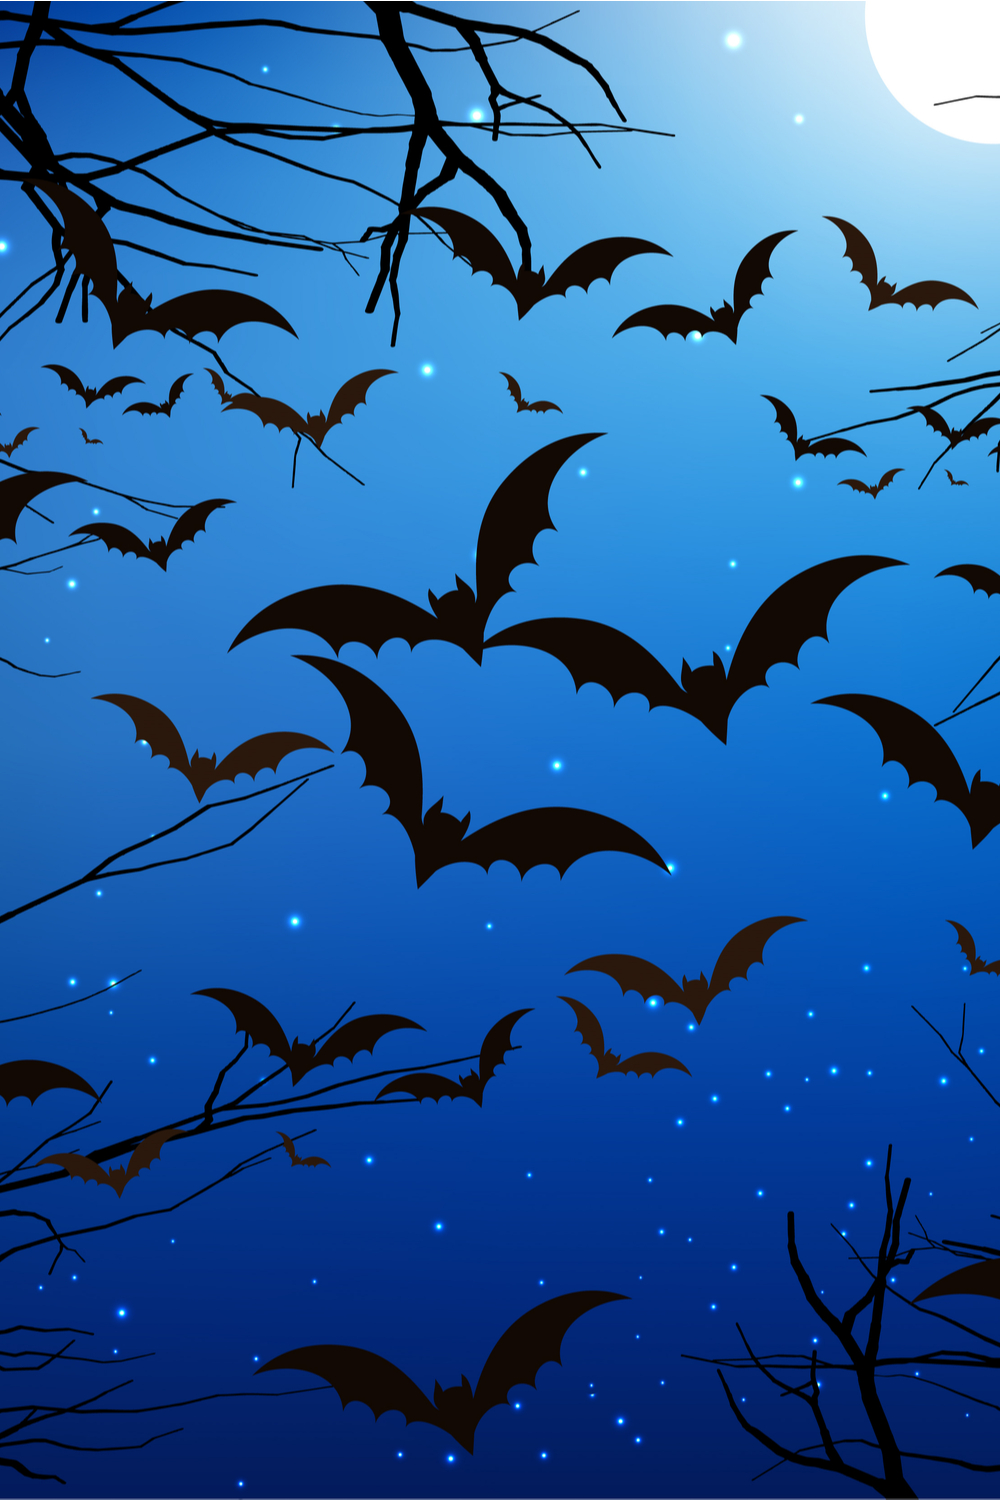 A Swarm of Bats